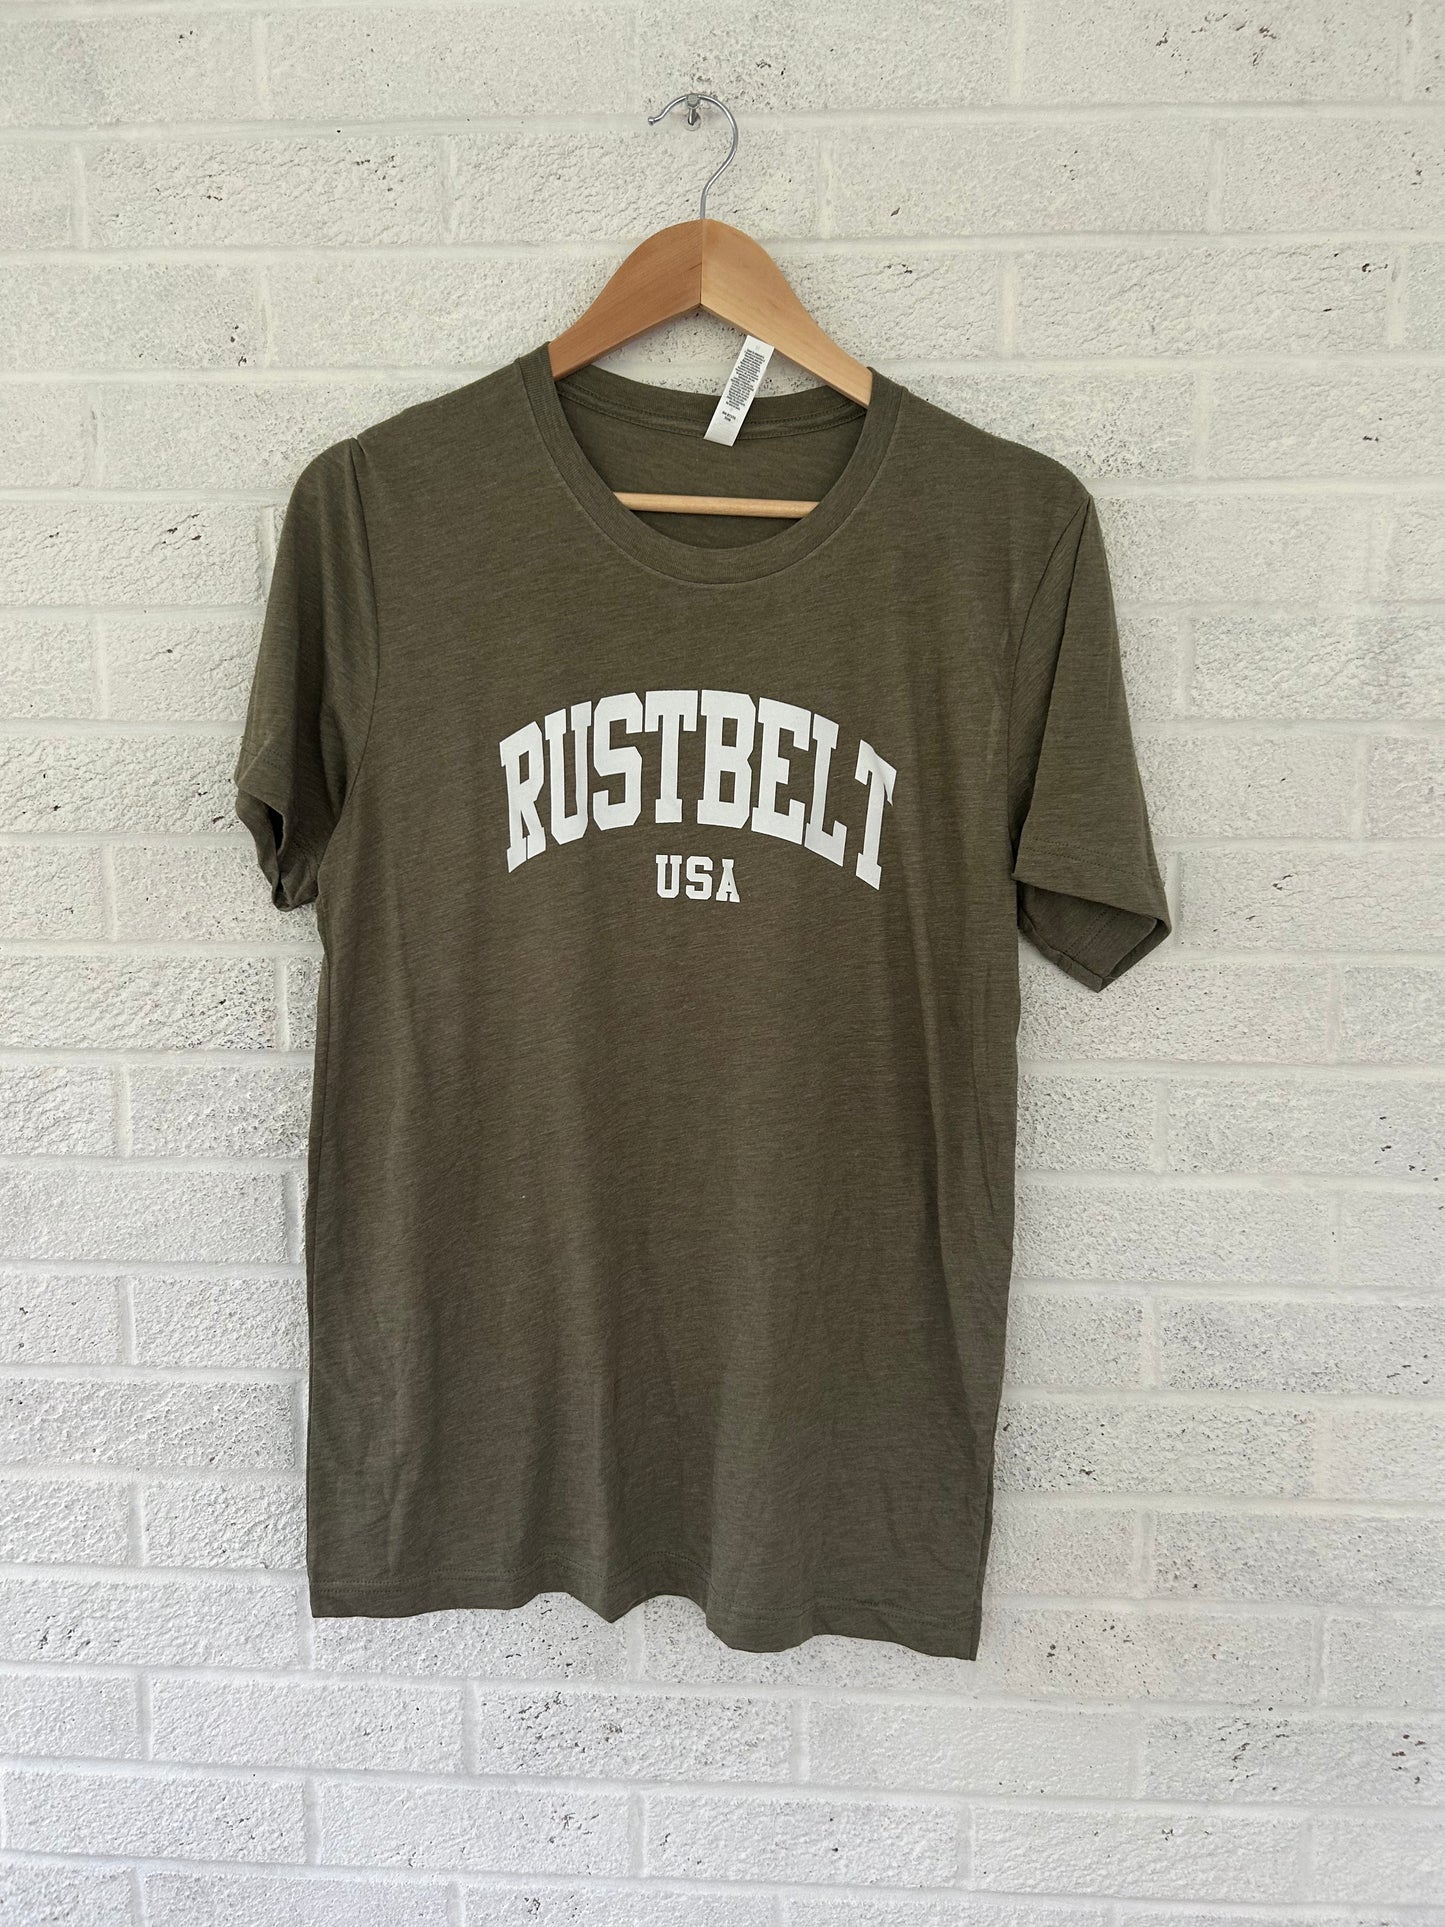 Rustbelt Green T-shirt (M)